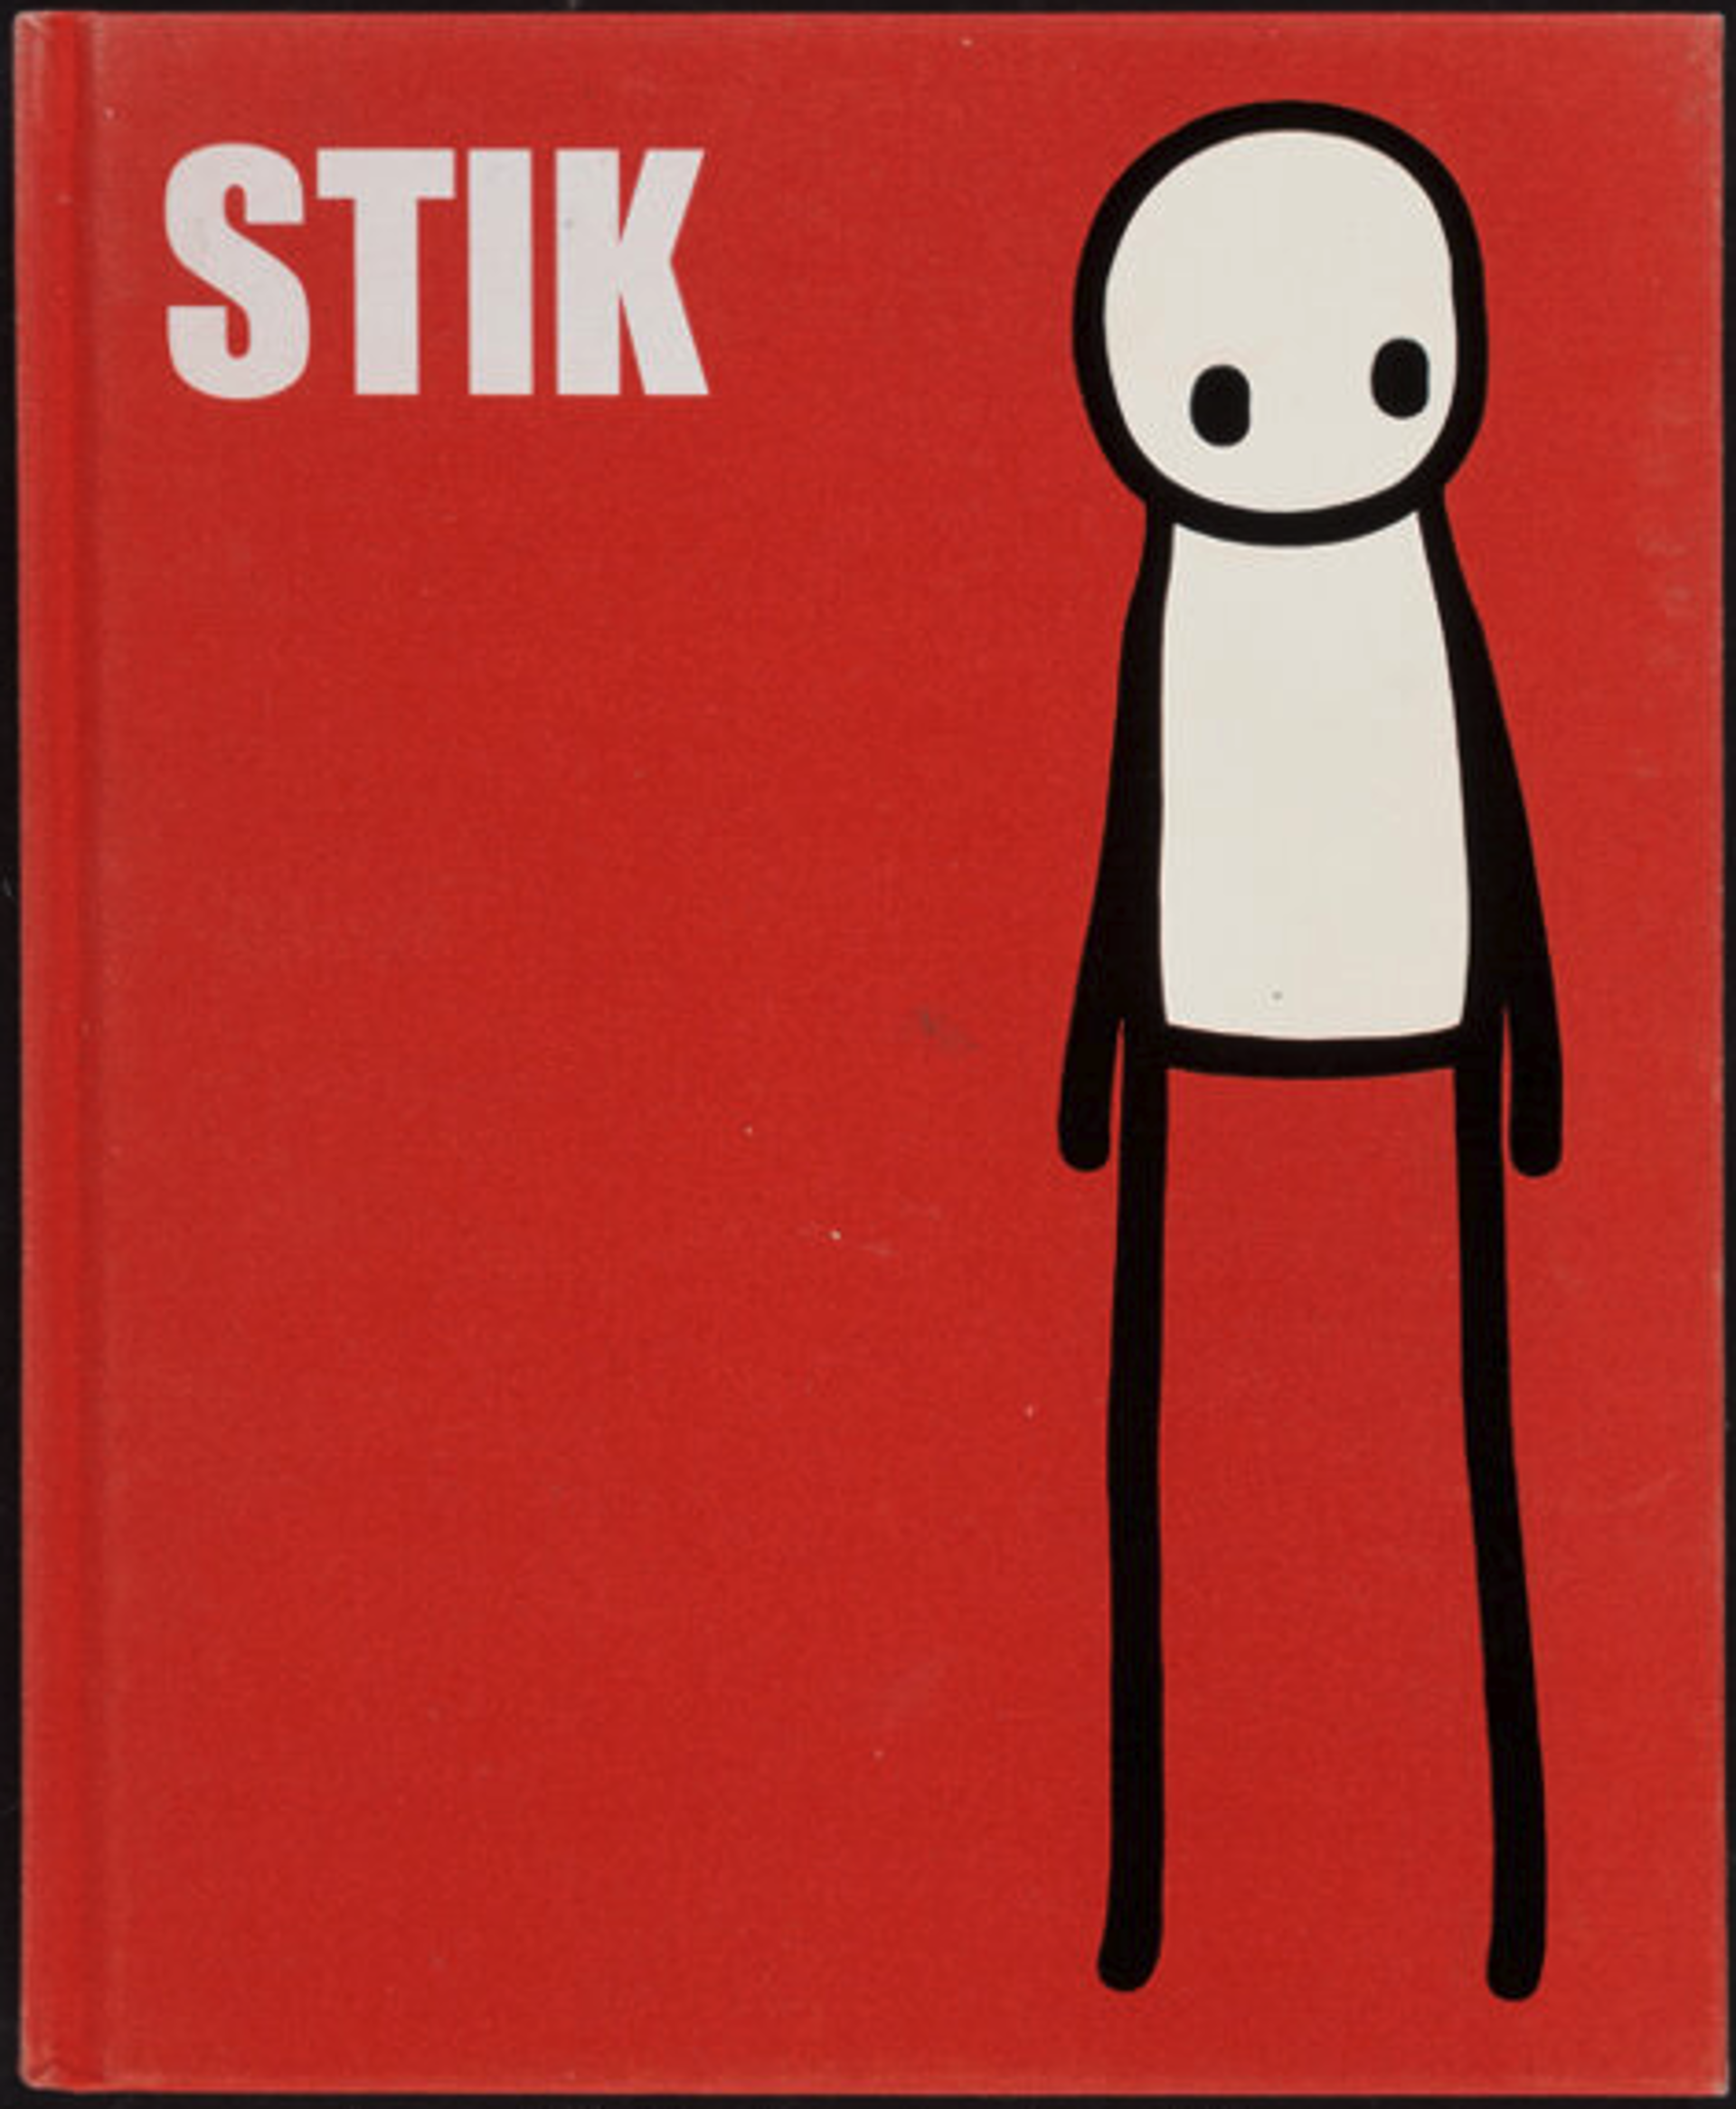 Stik (20th century) by Stik